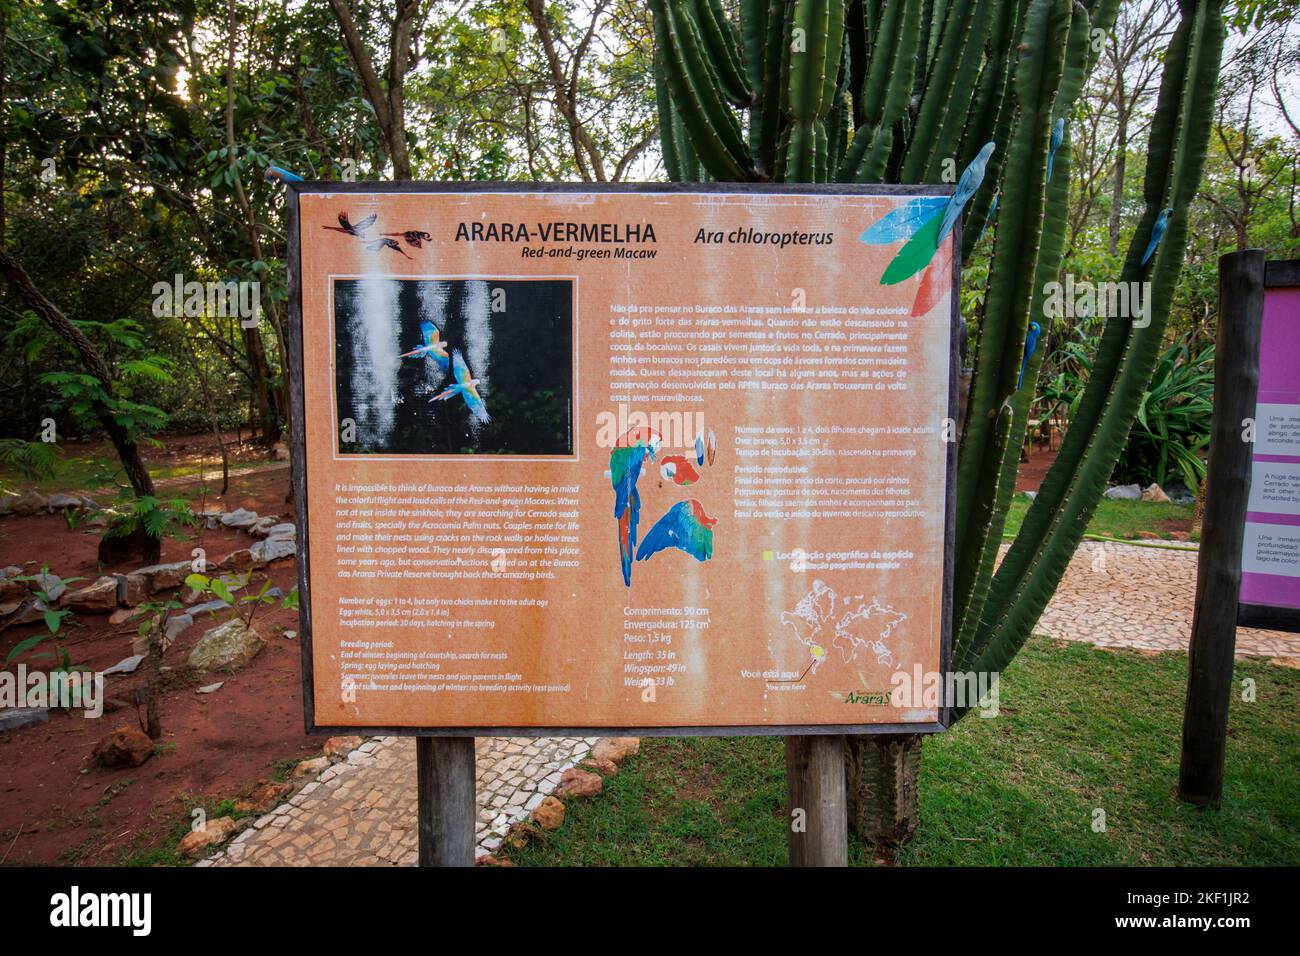 Panneau sur les aras rouges et verts à l'entrée de la Buraco das Araras, un gouffre naturel à Jardim, sud du Pantanal, Mato Grosso do Sul, Brésil Banque D'Images